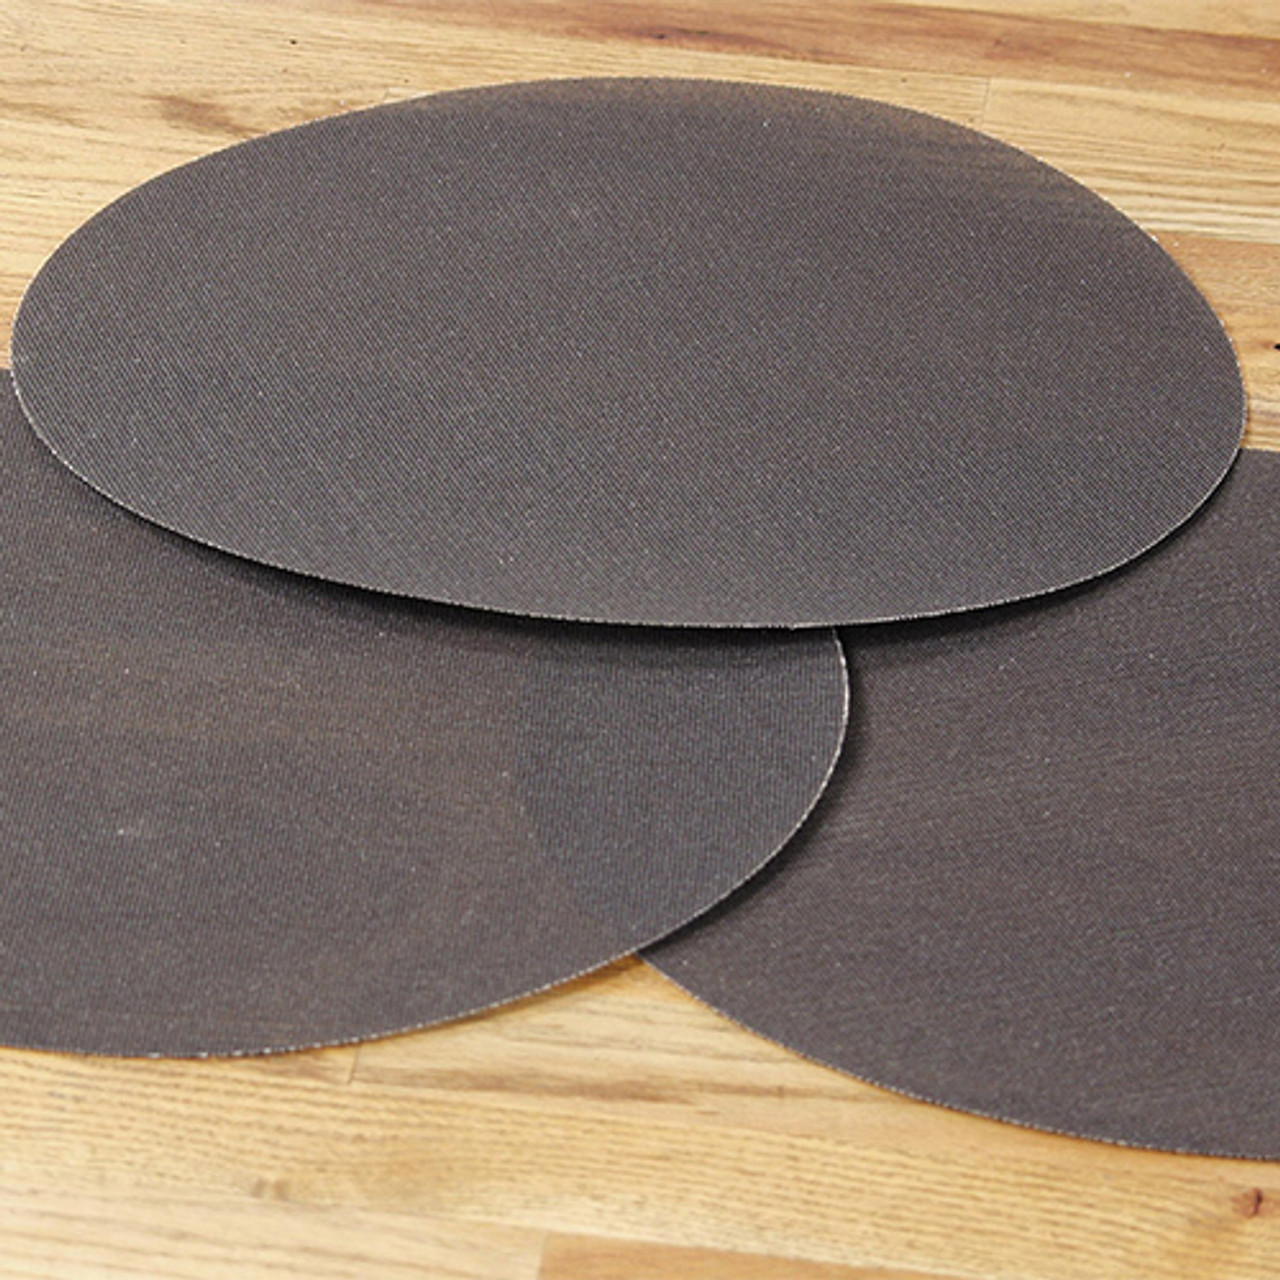 Klingspor Abrasives Floor Sanding, 16" Mesh Screen Disc, 220 Grit